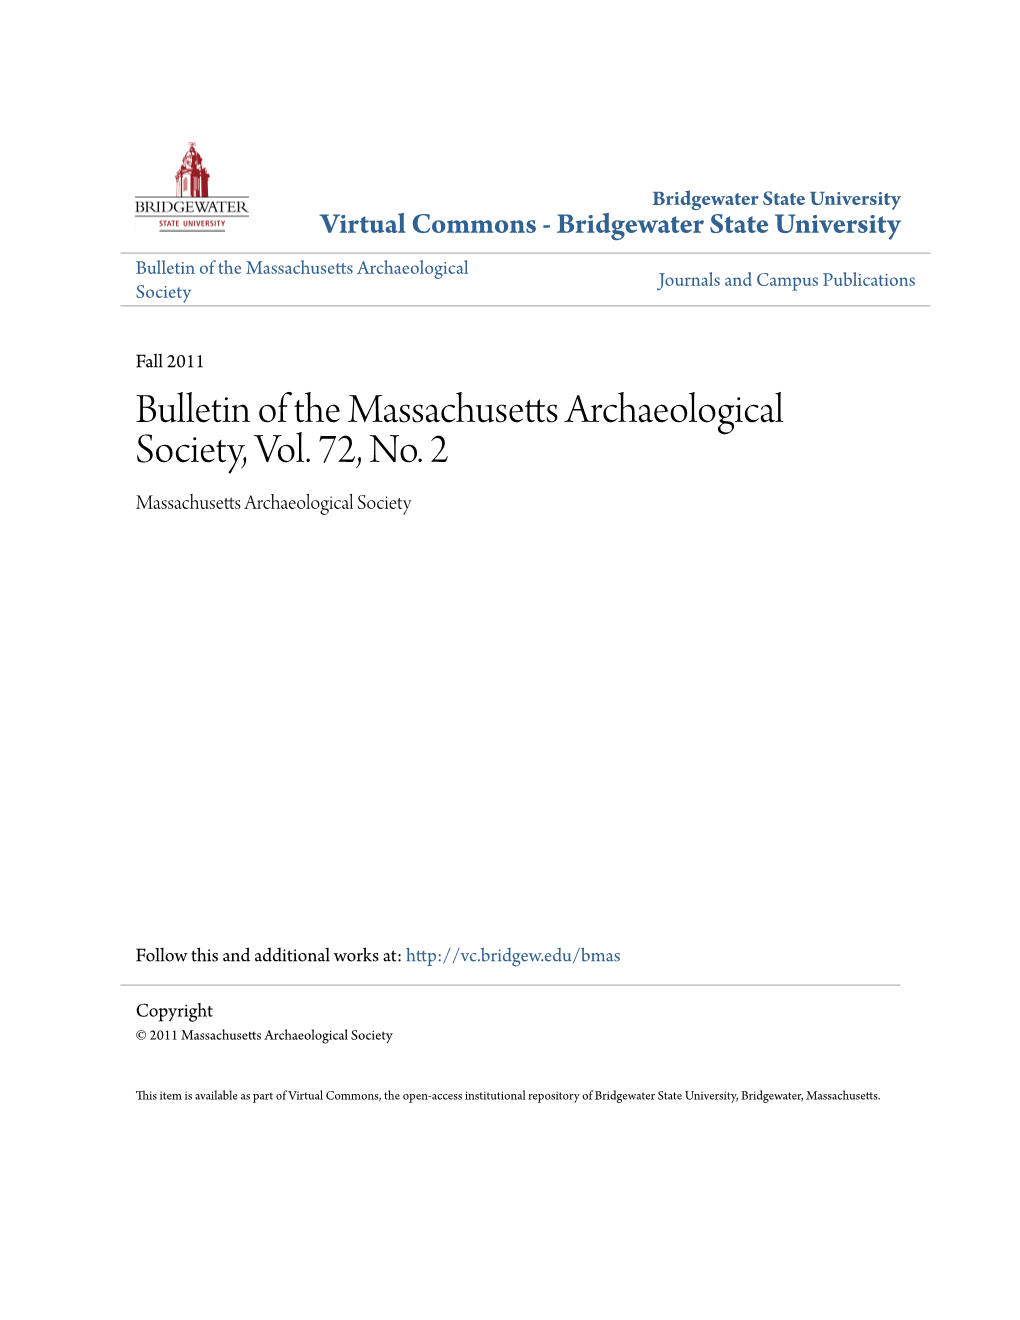 Bulletin of the Massachusetts Archaeological Society, Vol. 72, No. 2 Massachusetts Archaeological Society